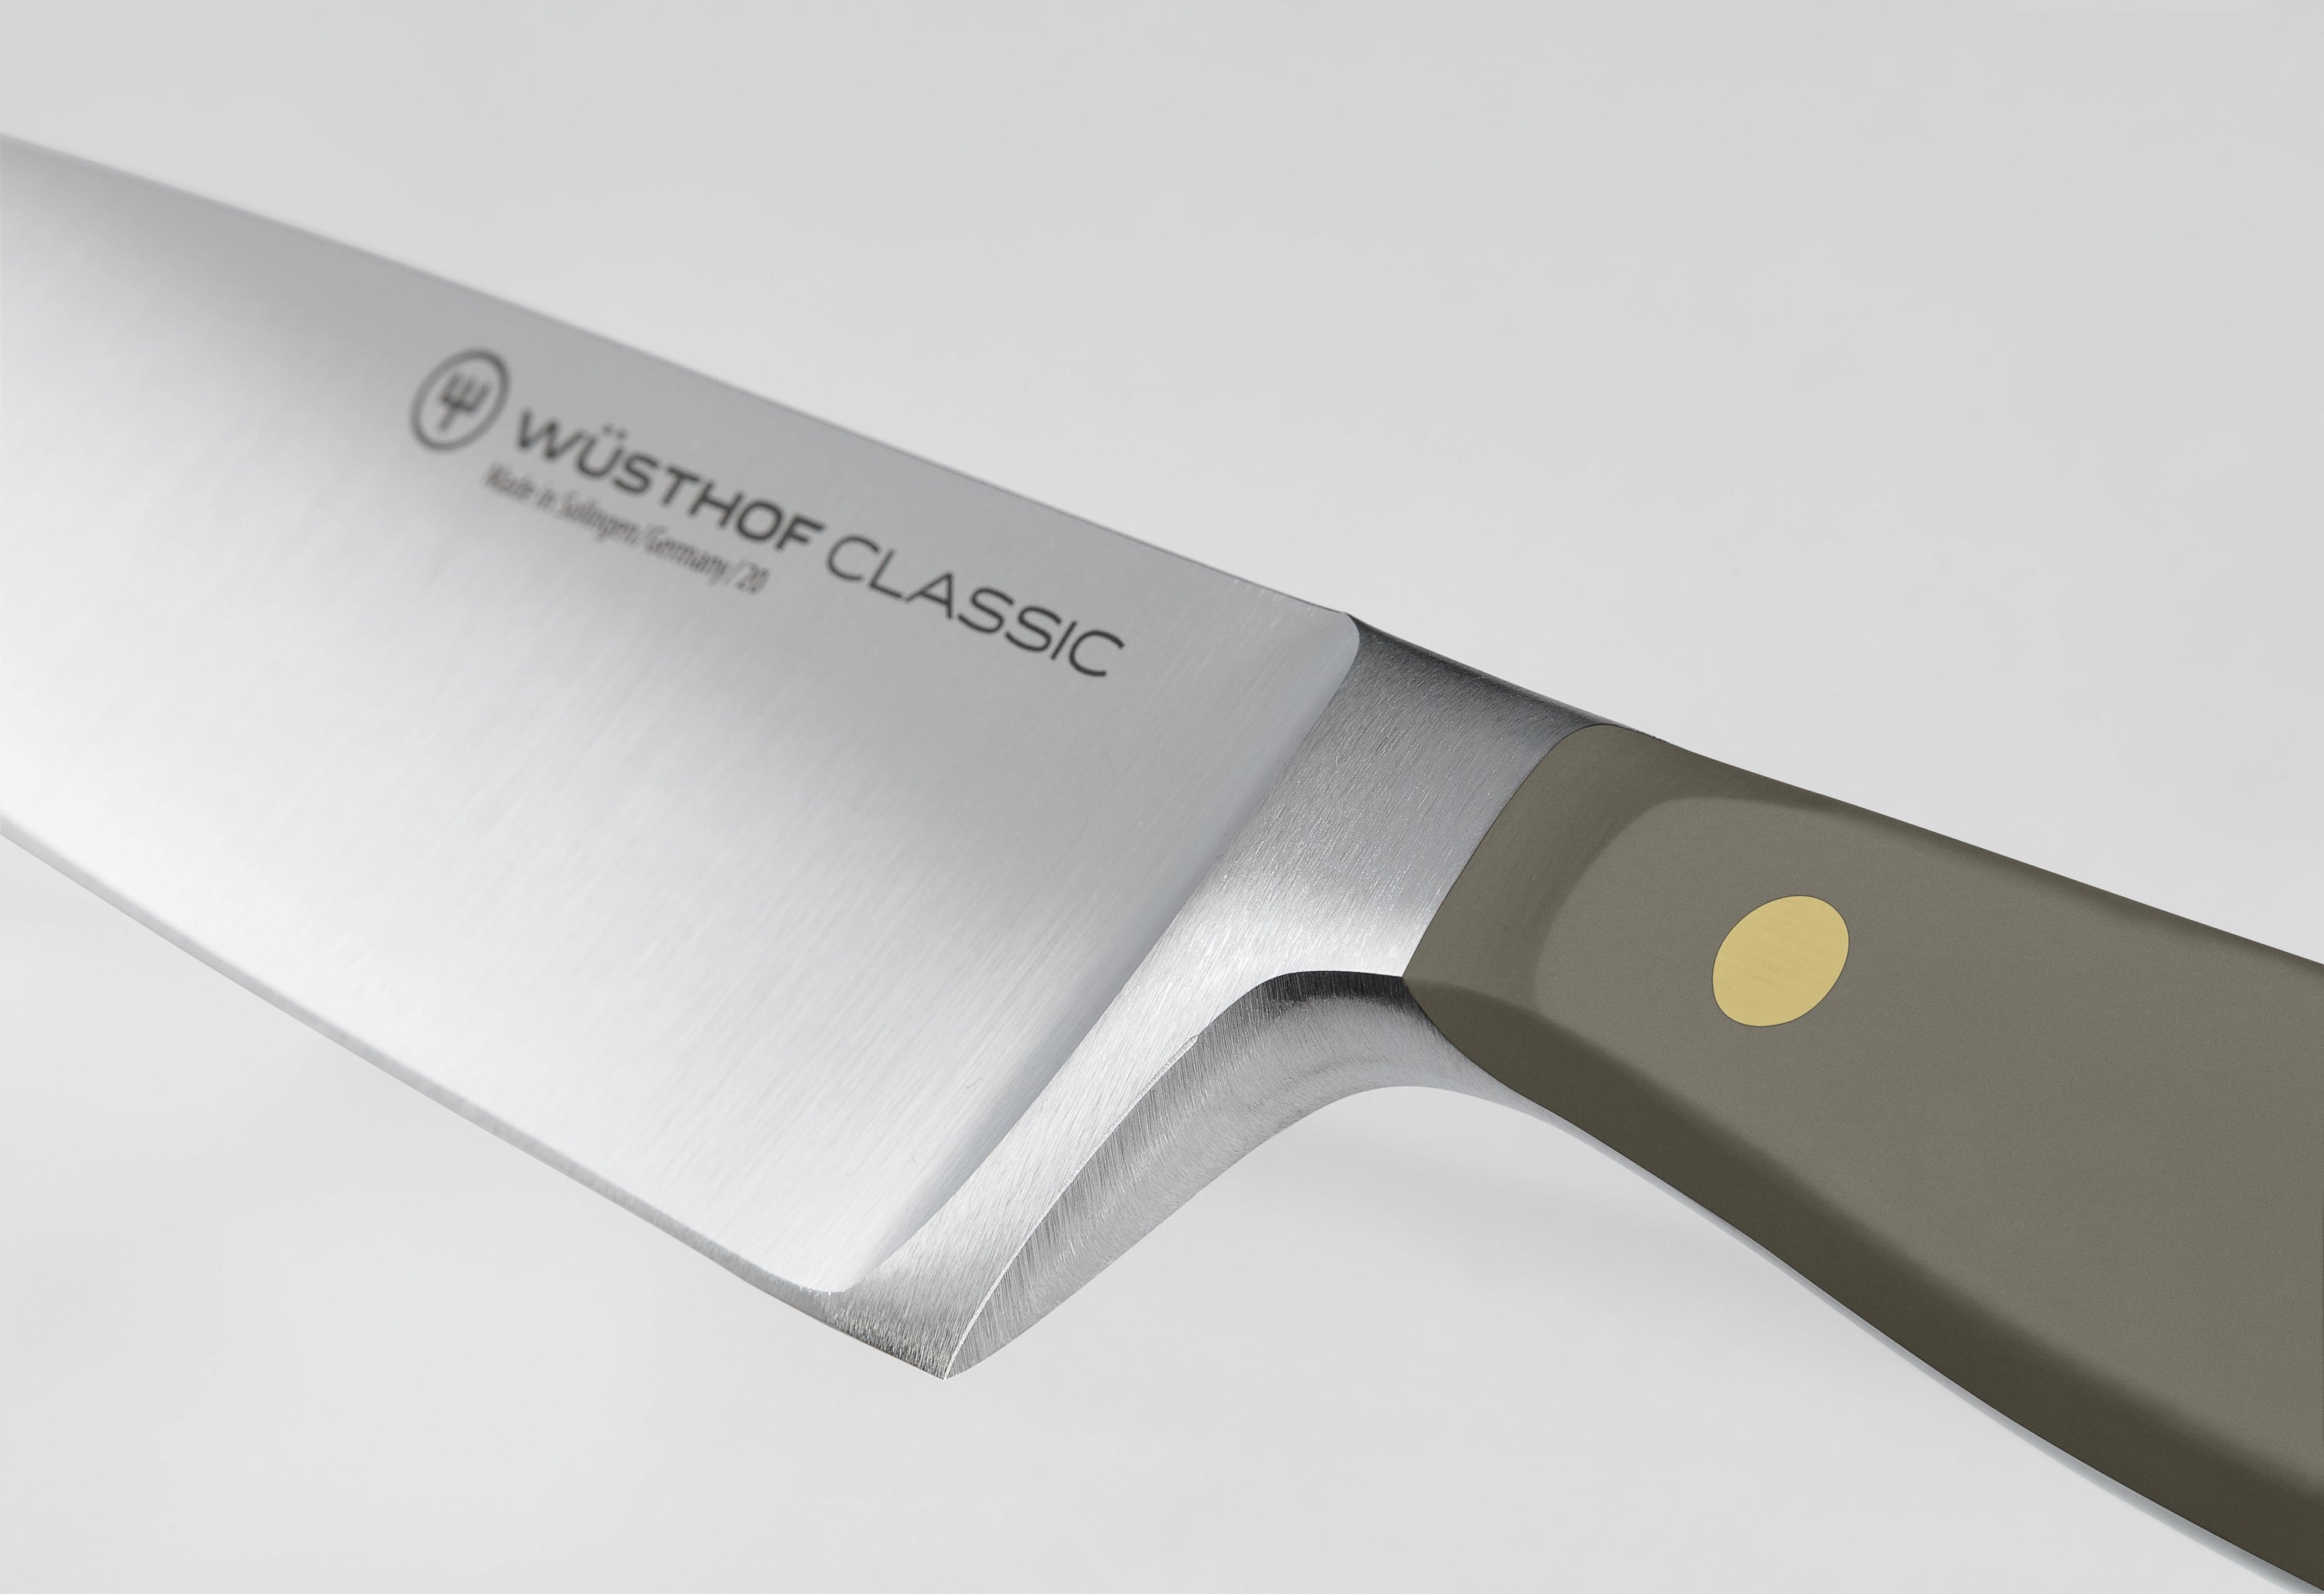 Wusthof Classic Colour Velvet Oyster Utility Knife 16cm 1061704116W